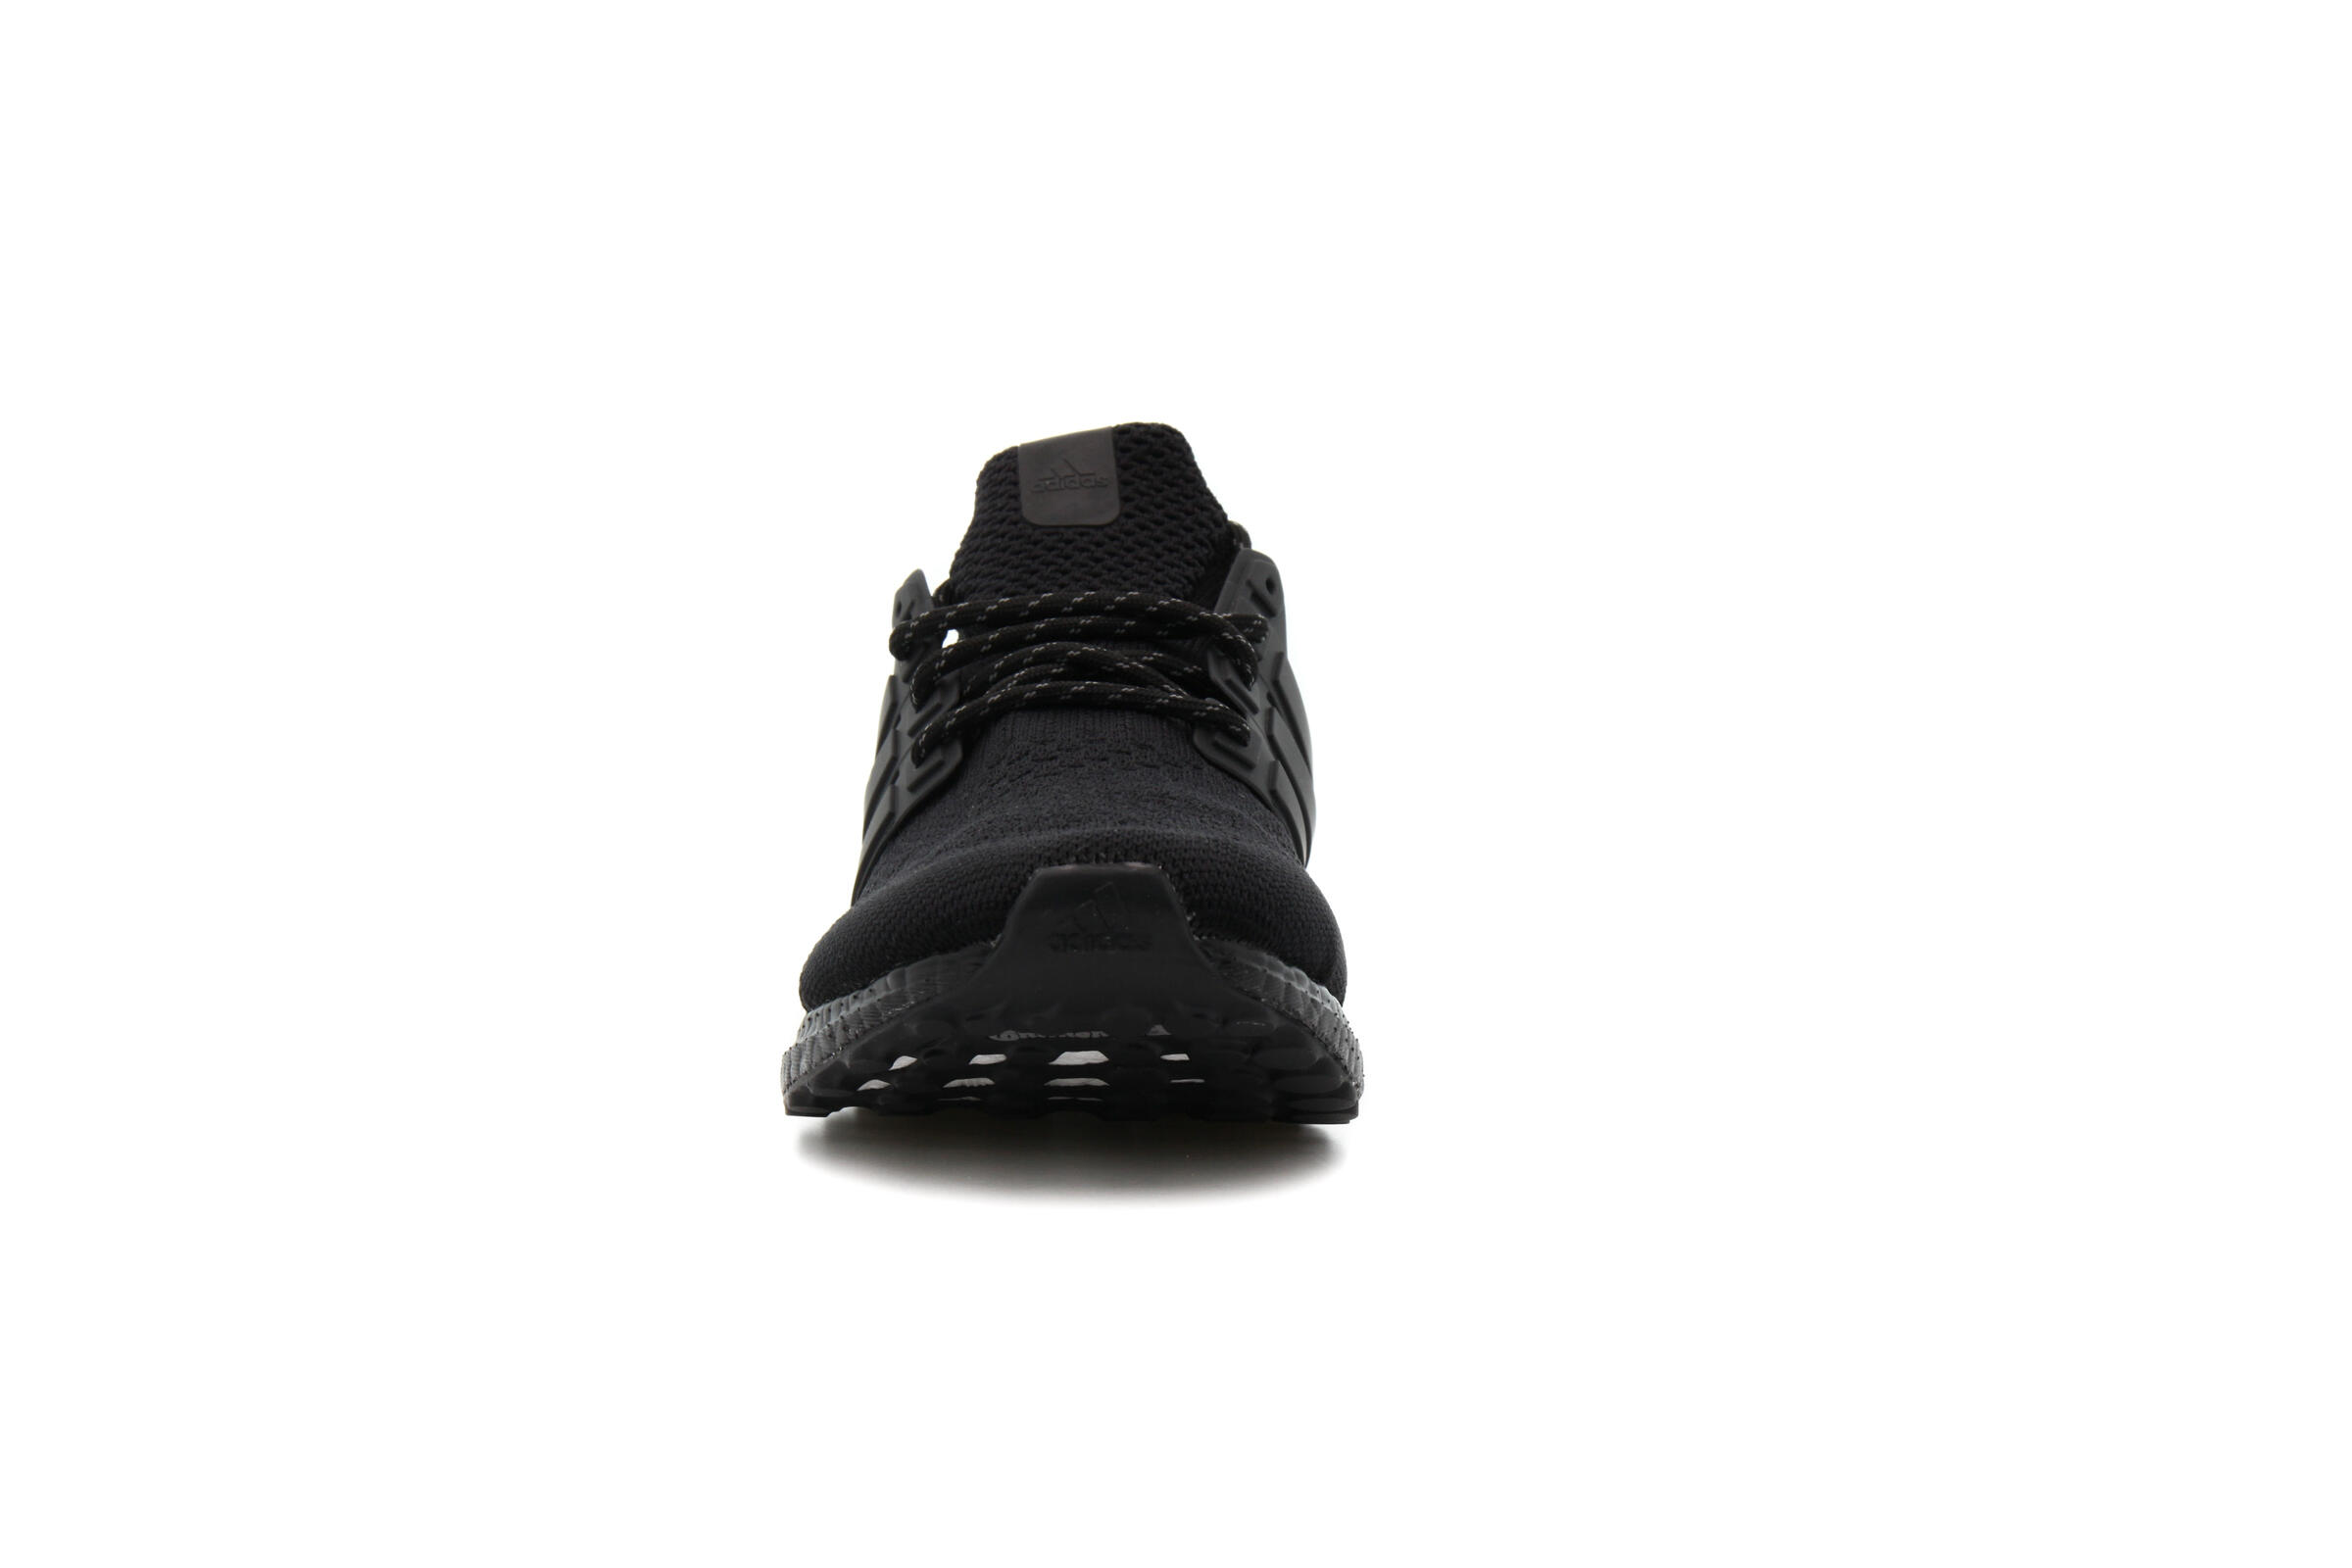 adidas Originals PW HU Ultraboost DNA "Core Black"